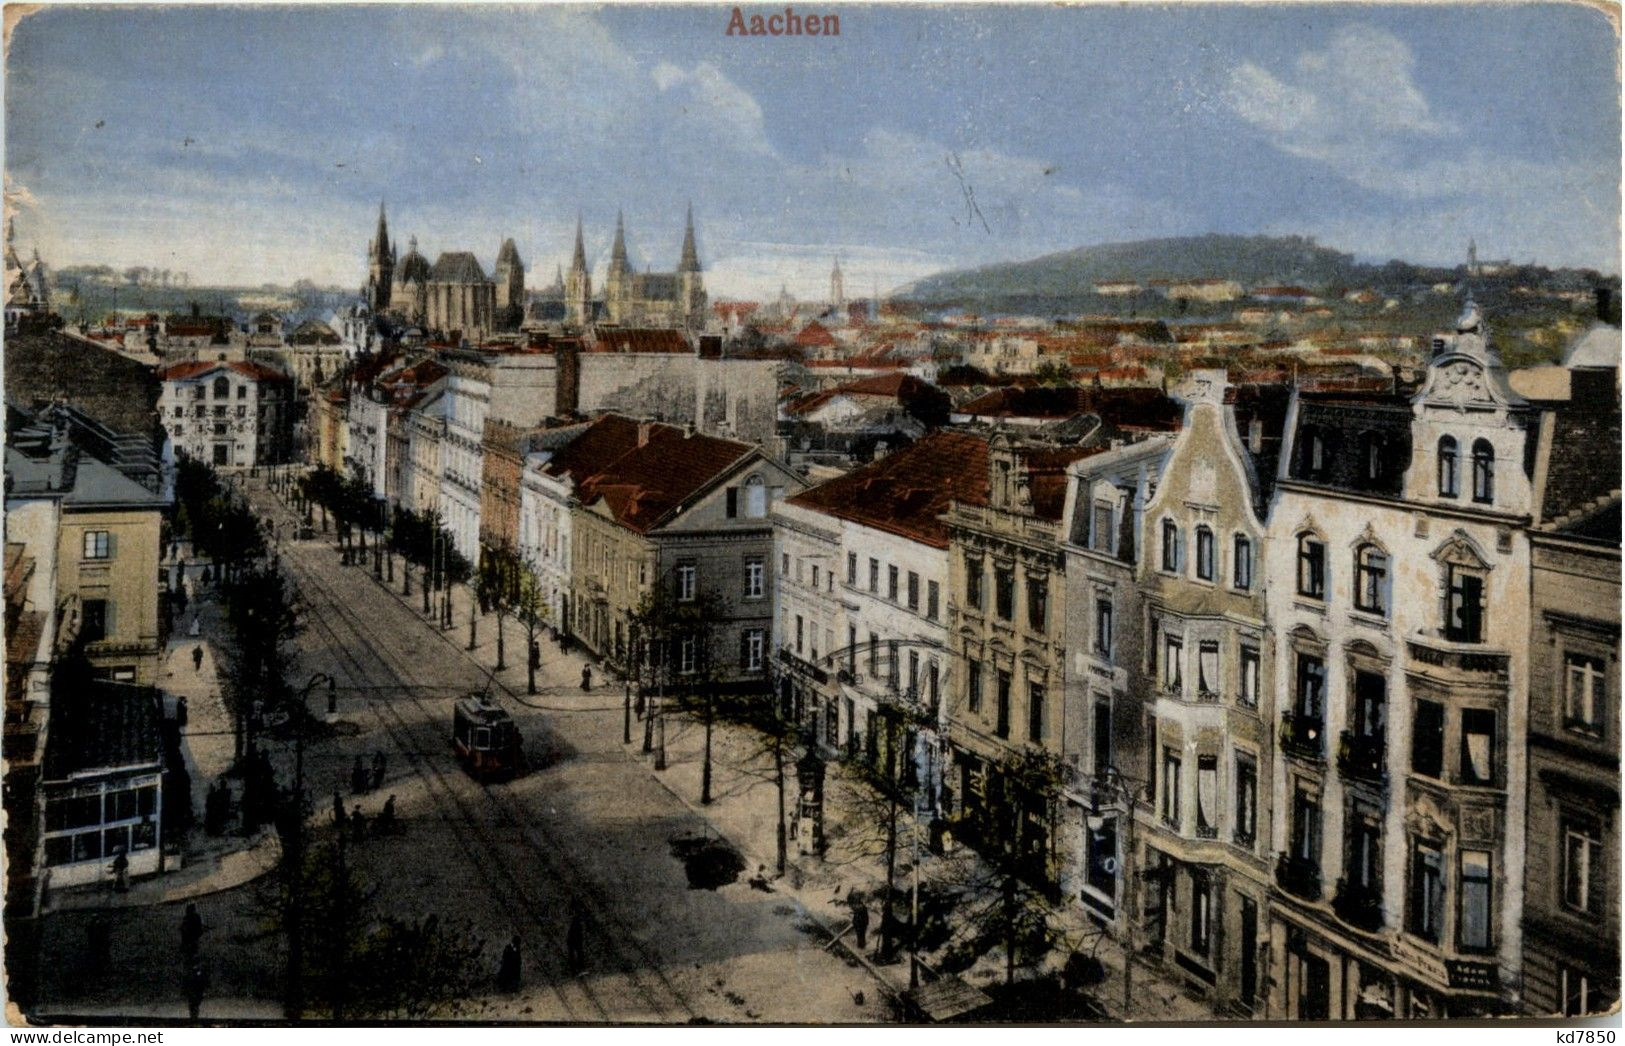 Aachen - Aachen